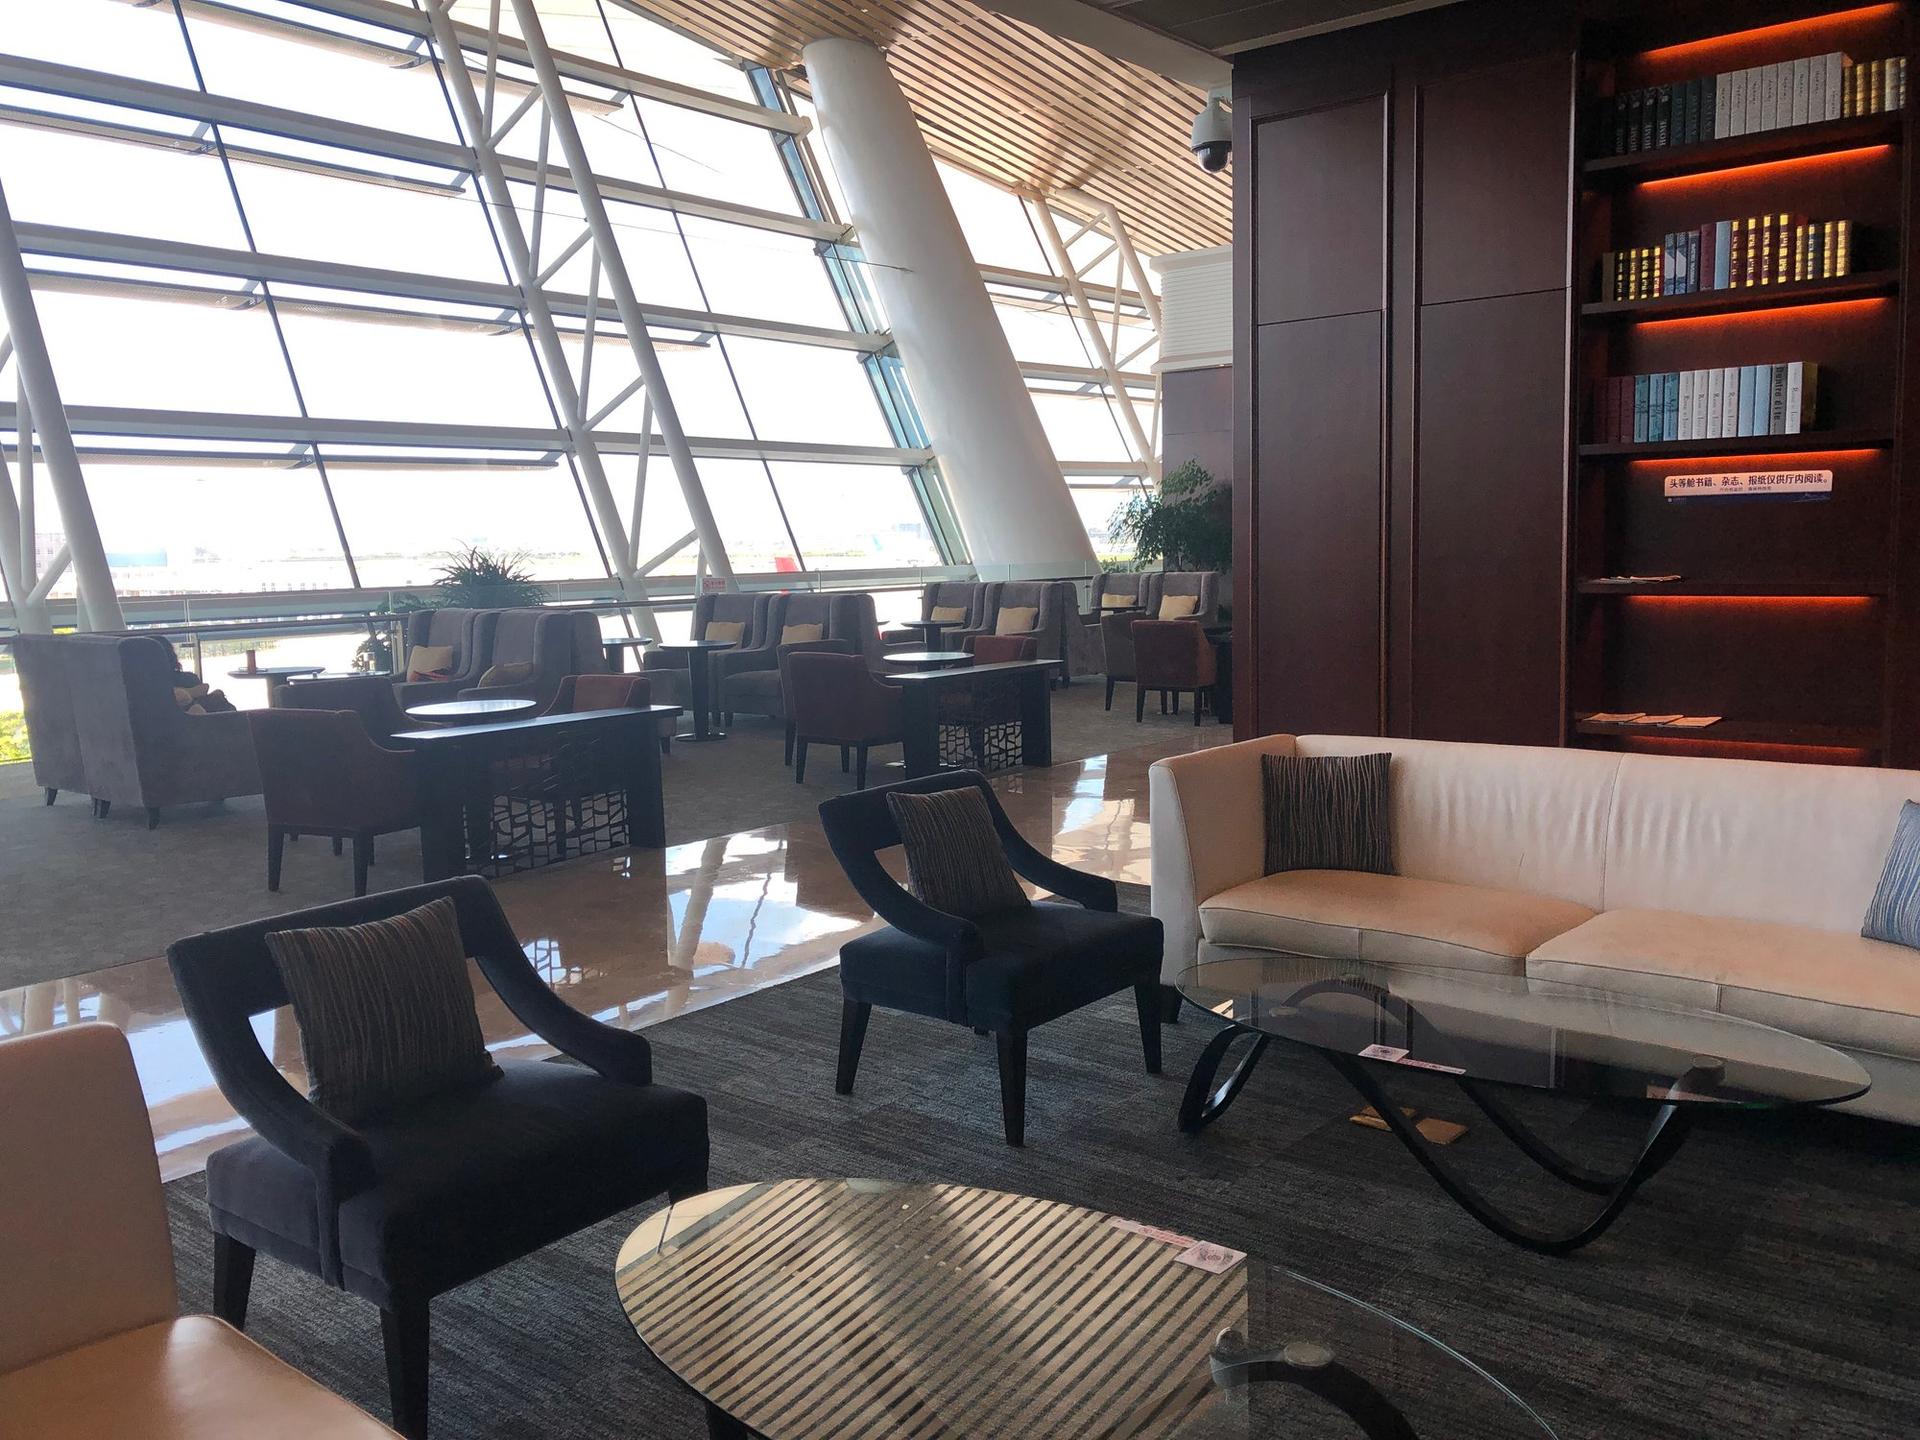 Xiamen Gaoqi Airport First/Business Class Lounge image 1 of 1